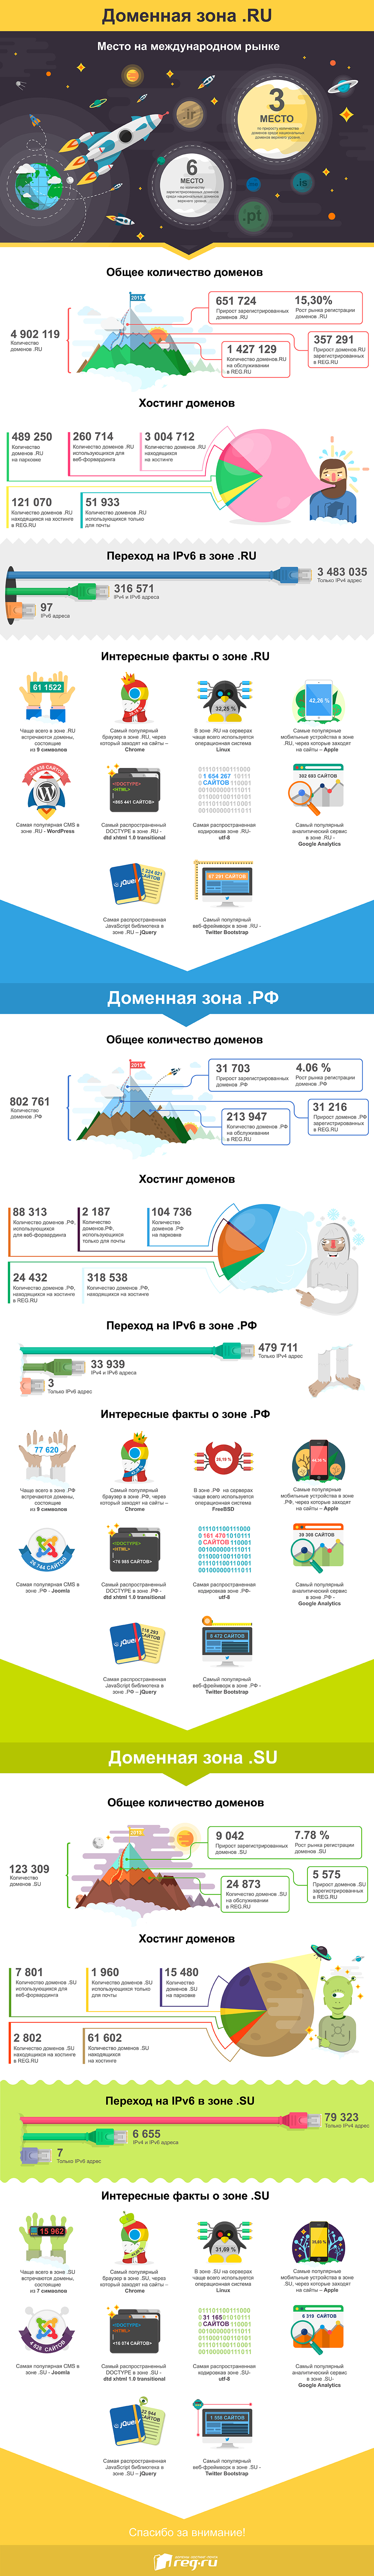 Российское доменное пространство: итоги 2013 года